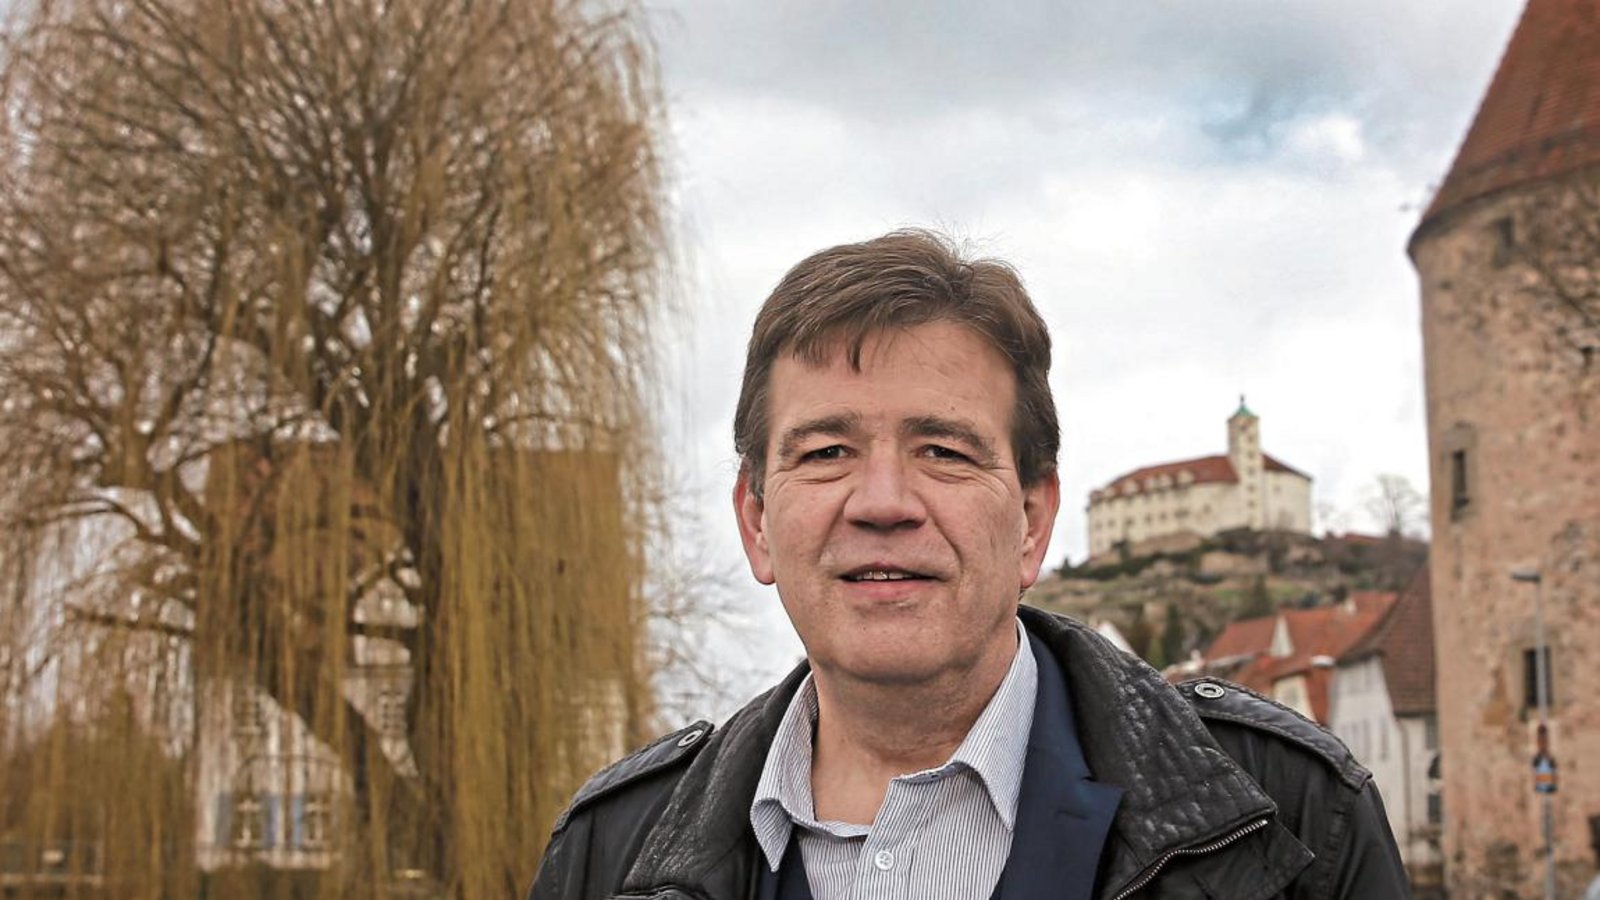 Friedemann Meyer ist der Kandidat der AfD im Wahlkreis Vaihingen für die Landtagswahl am 14. März. Foto: Küppers